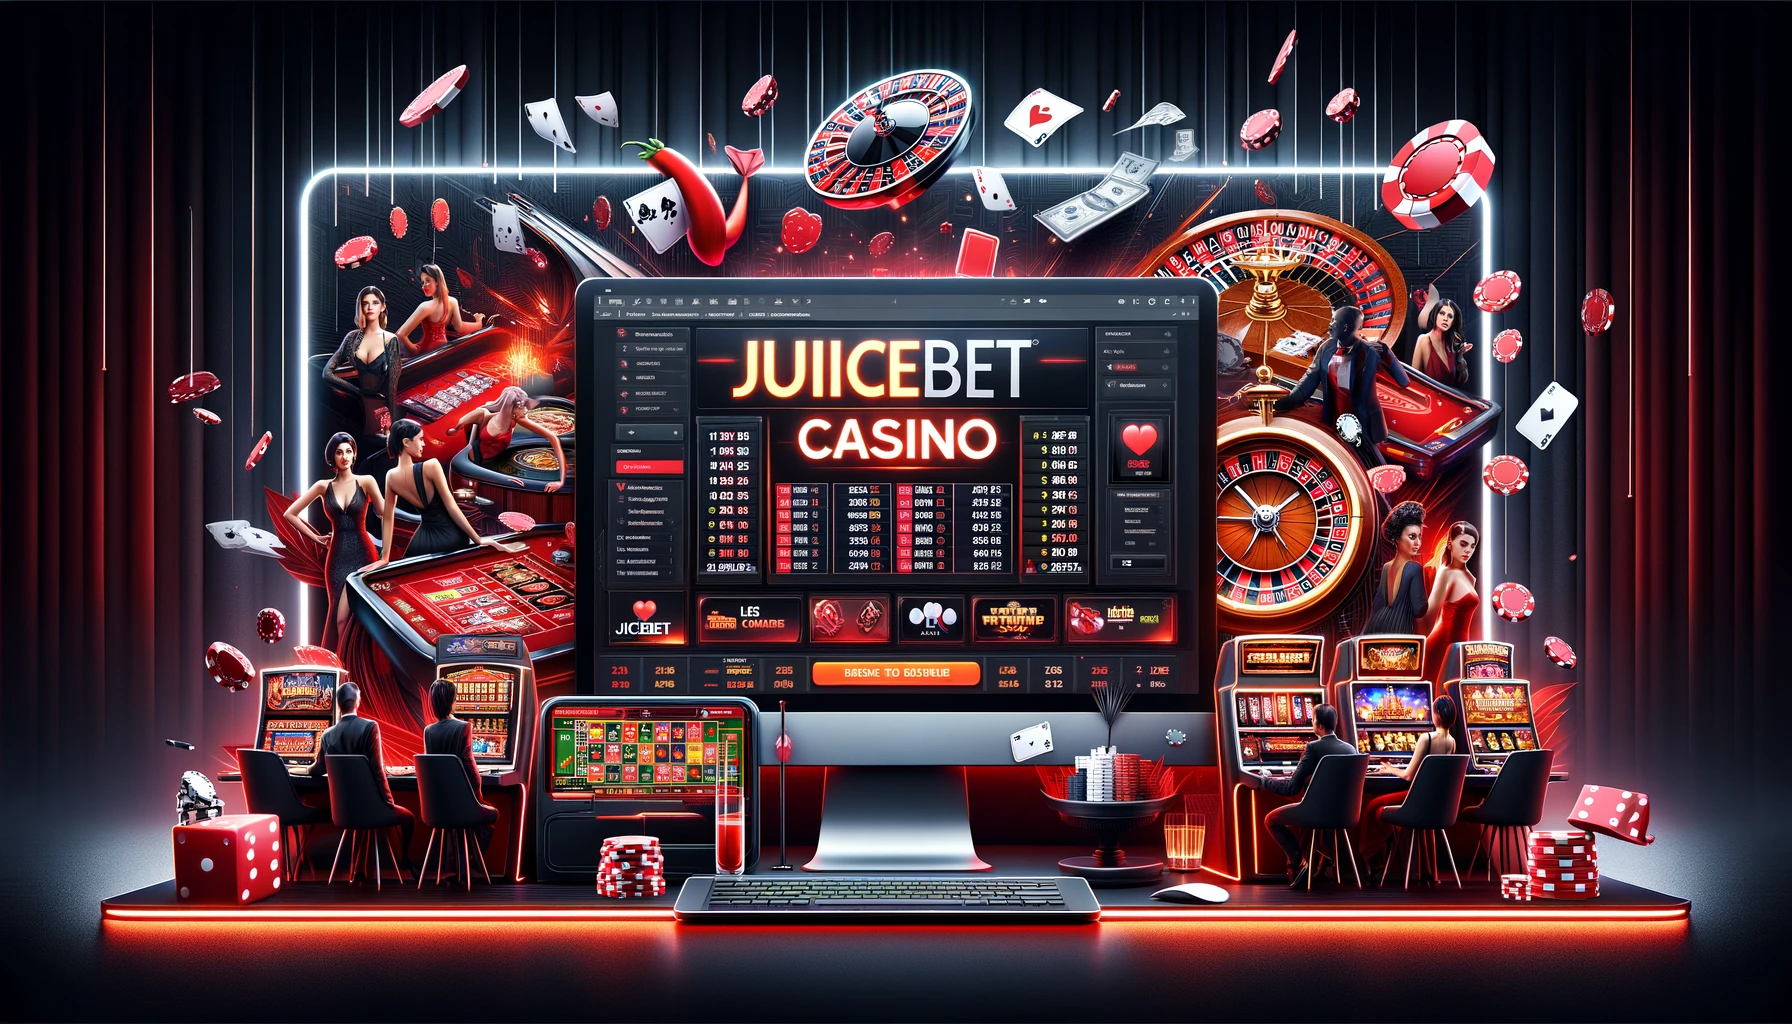 Juicebet casino online